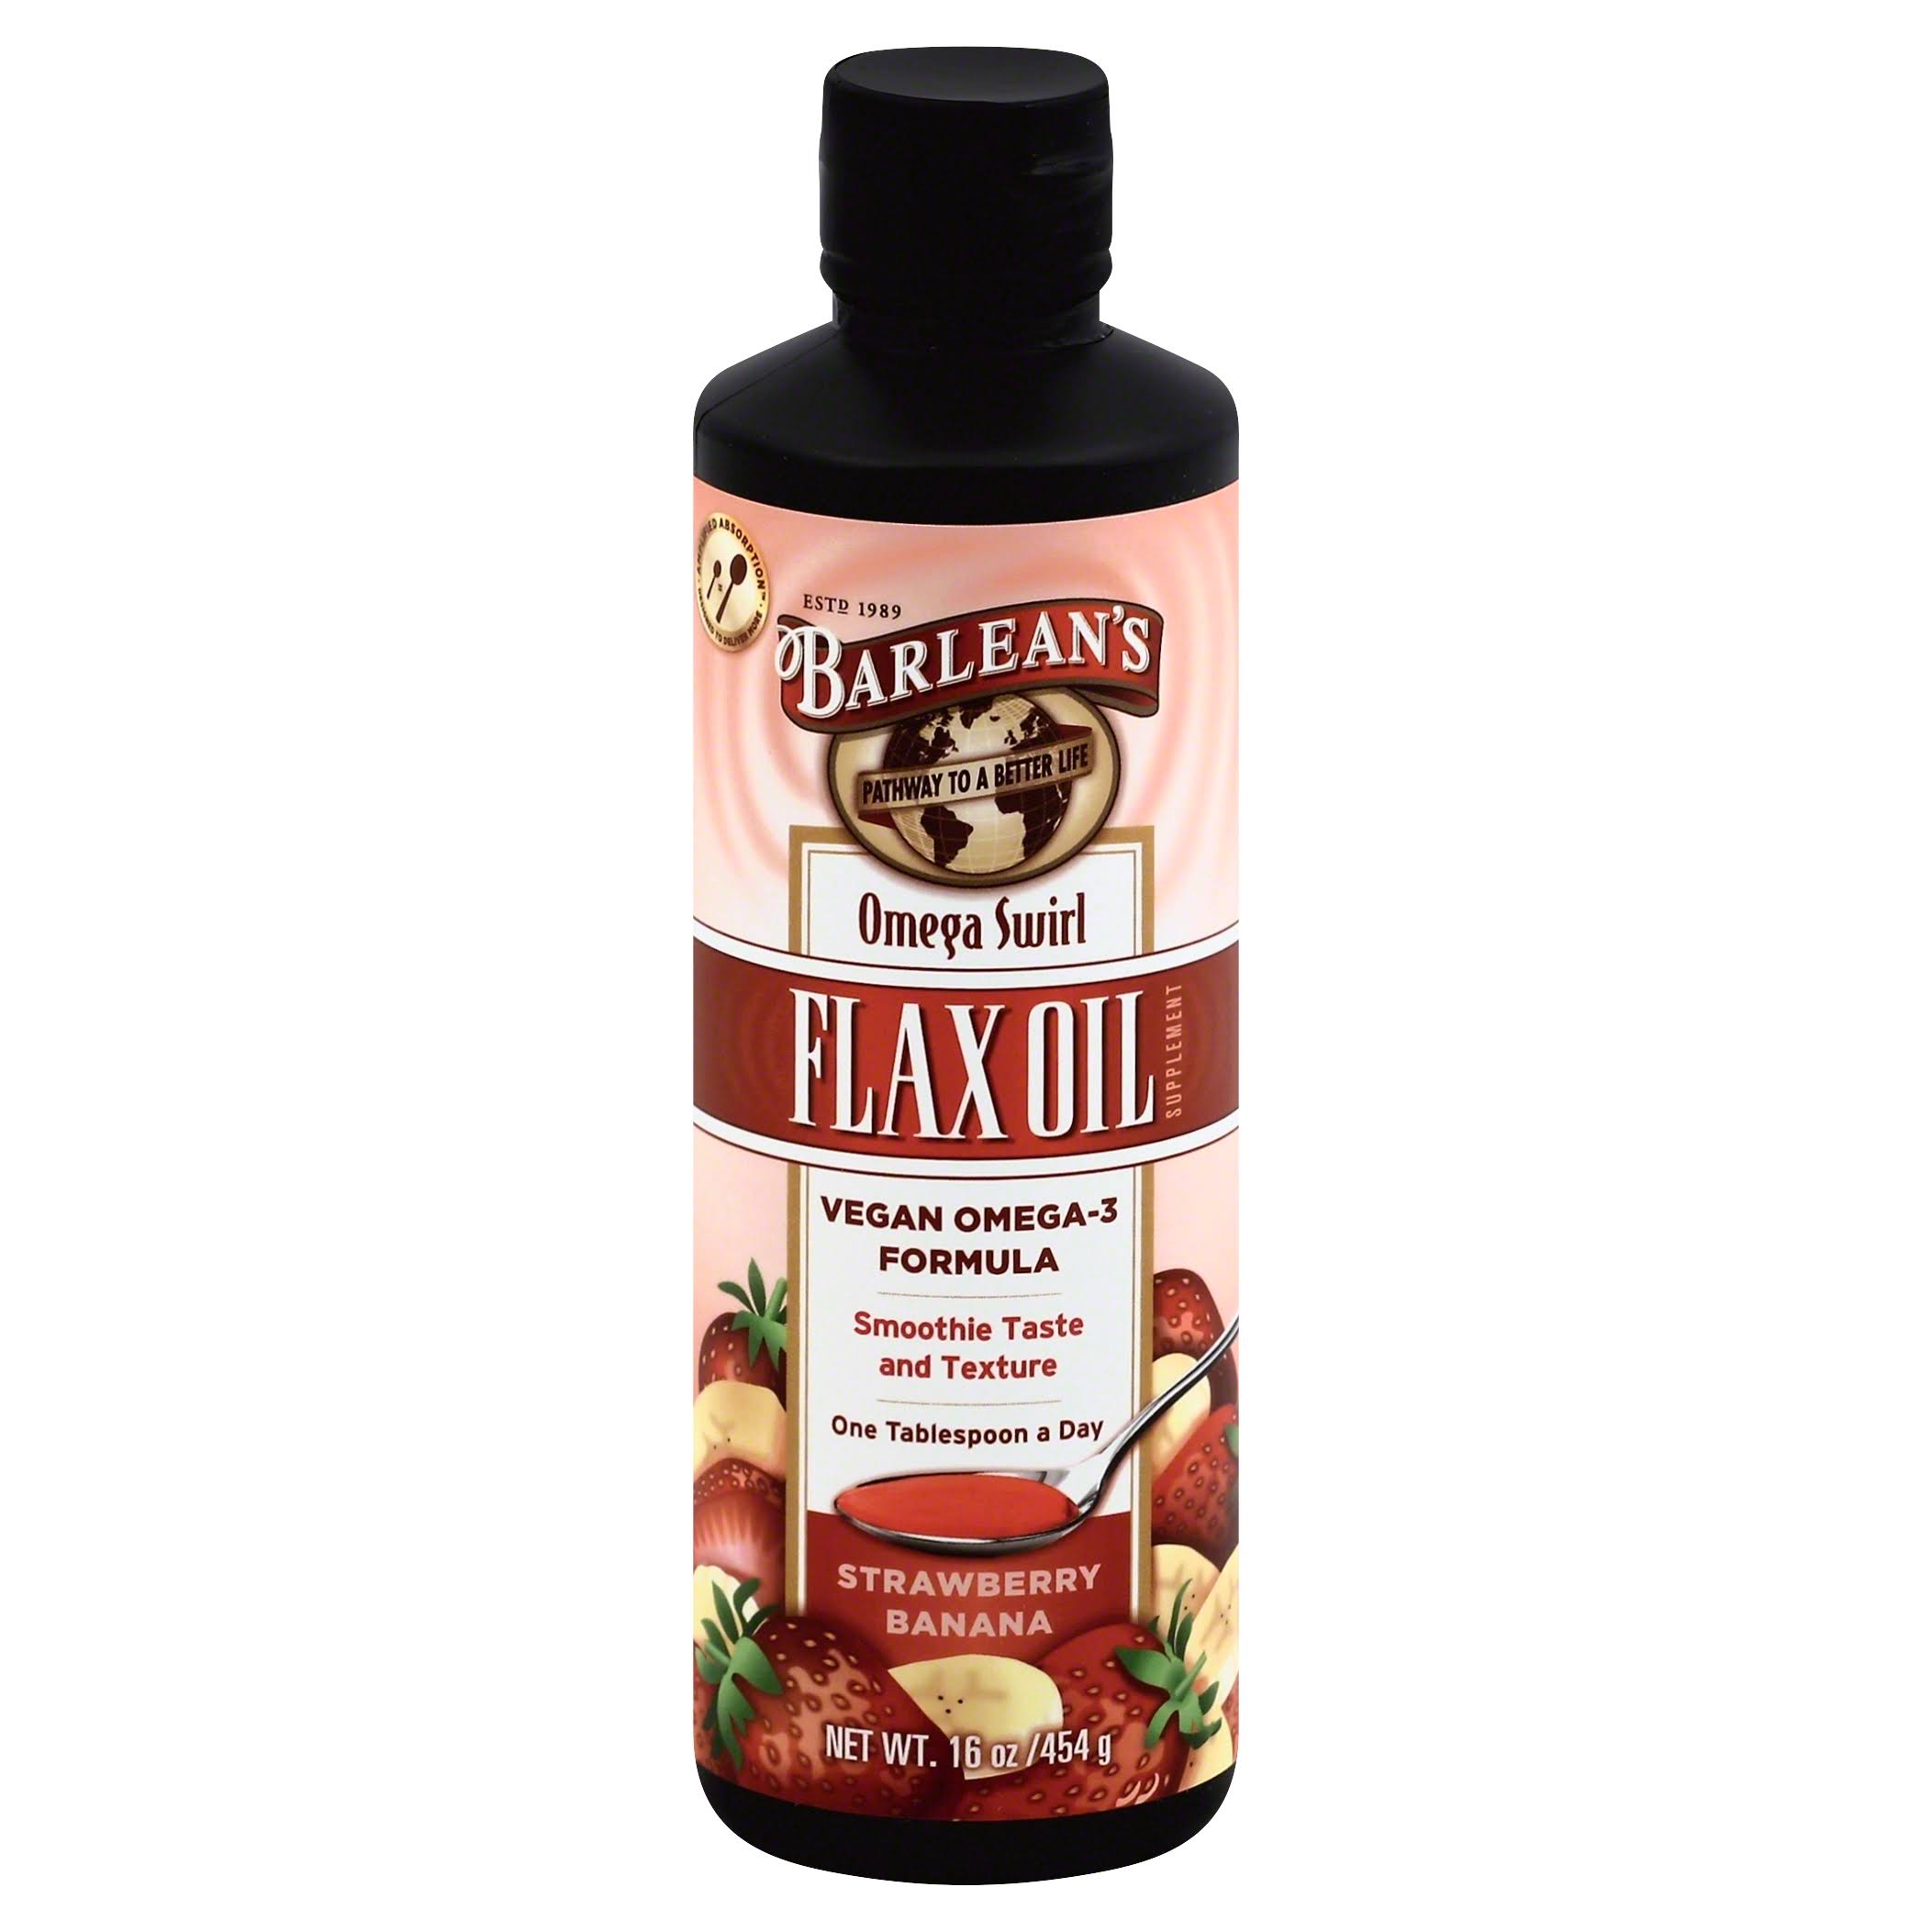 Barlean's Omega Swirl Flax Oil